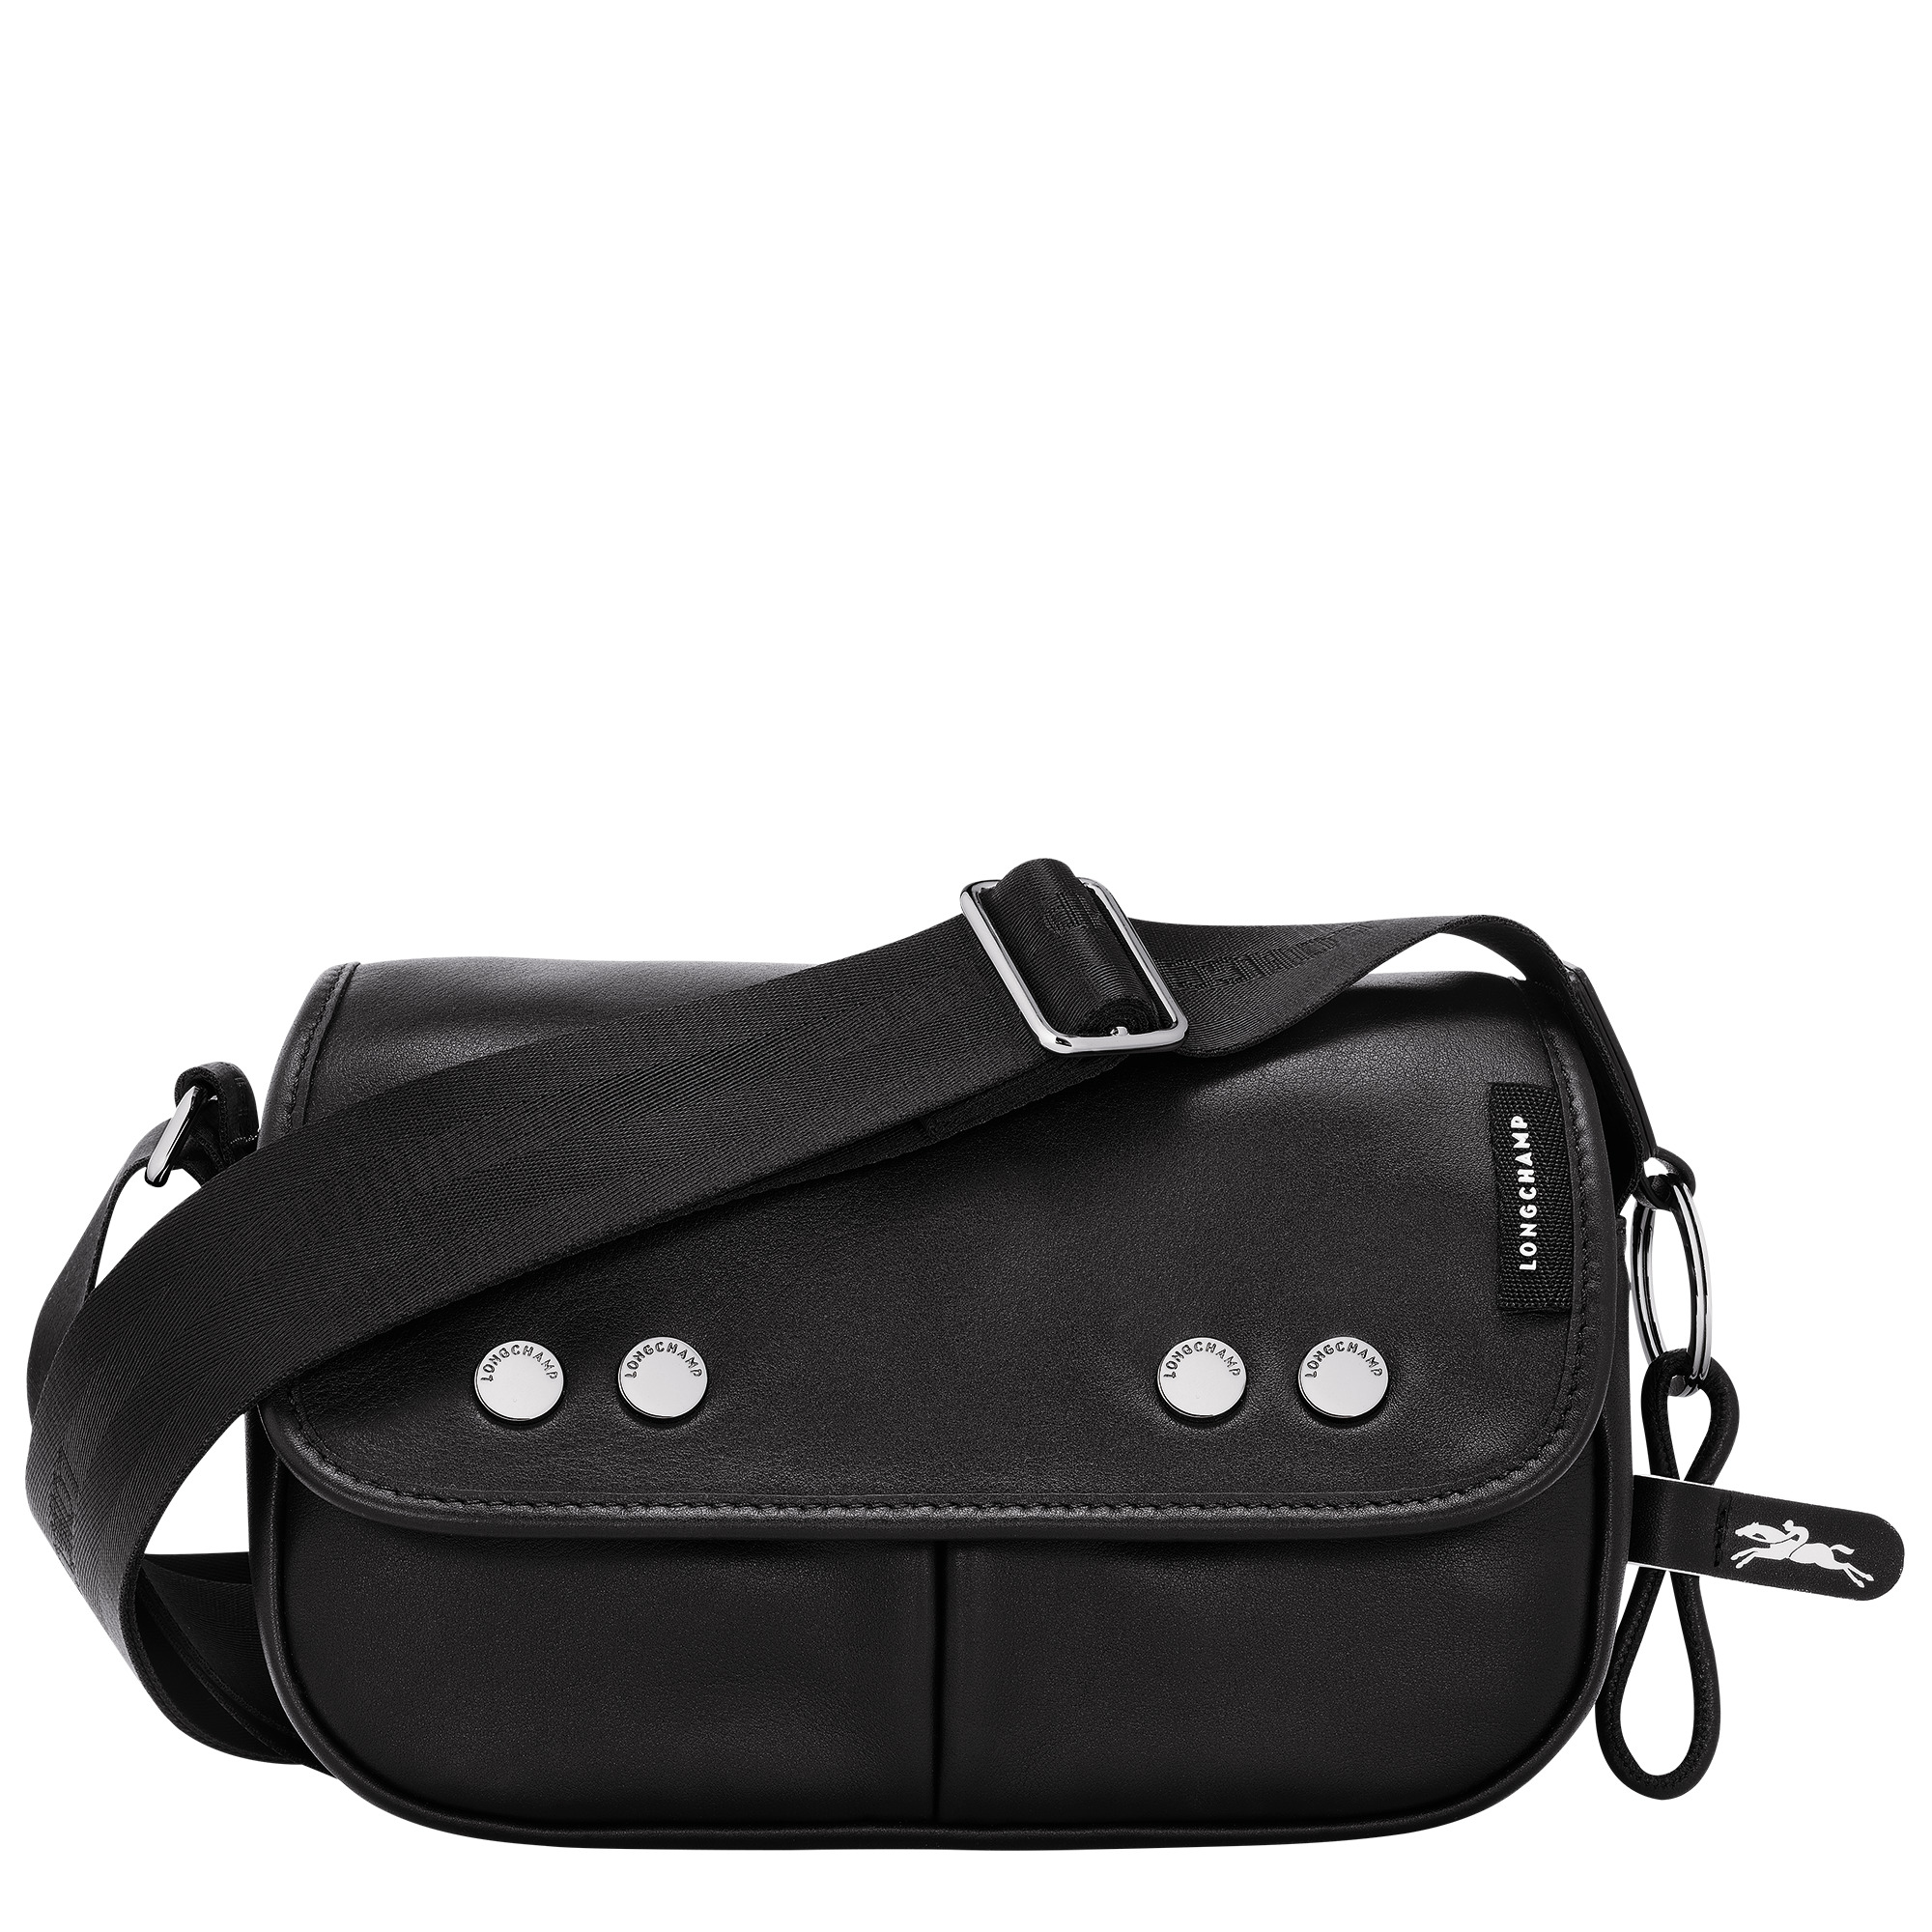 Très Paris S Crossbody bag Black - Leather - 1